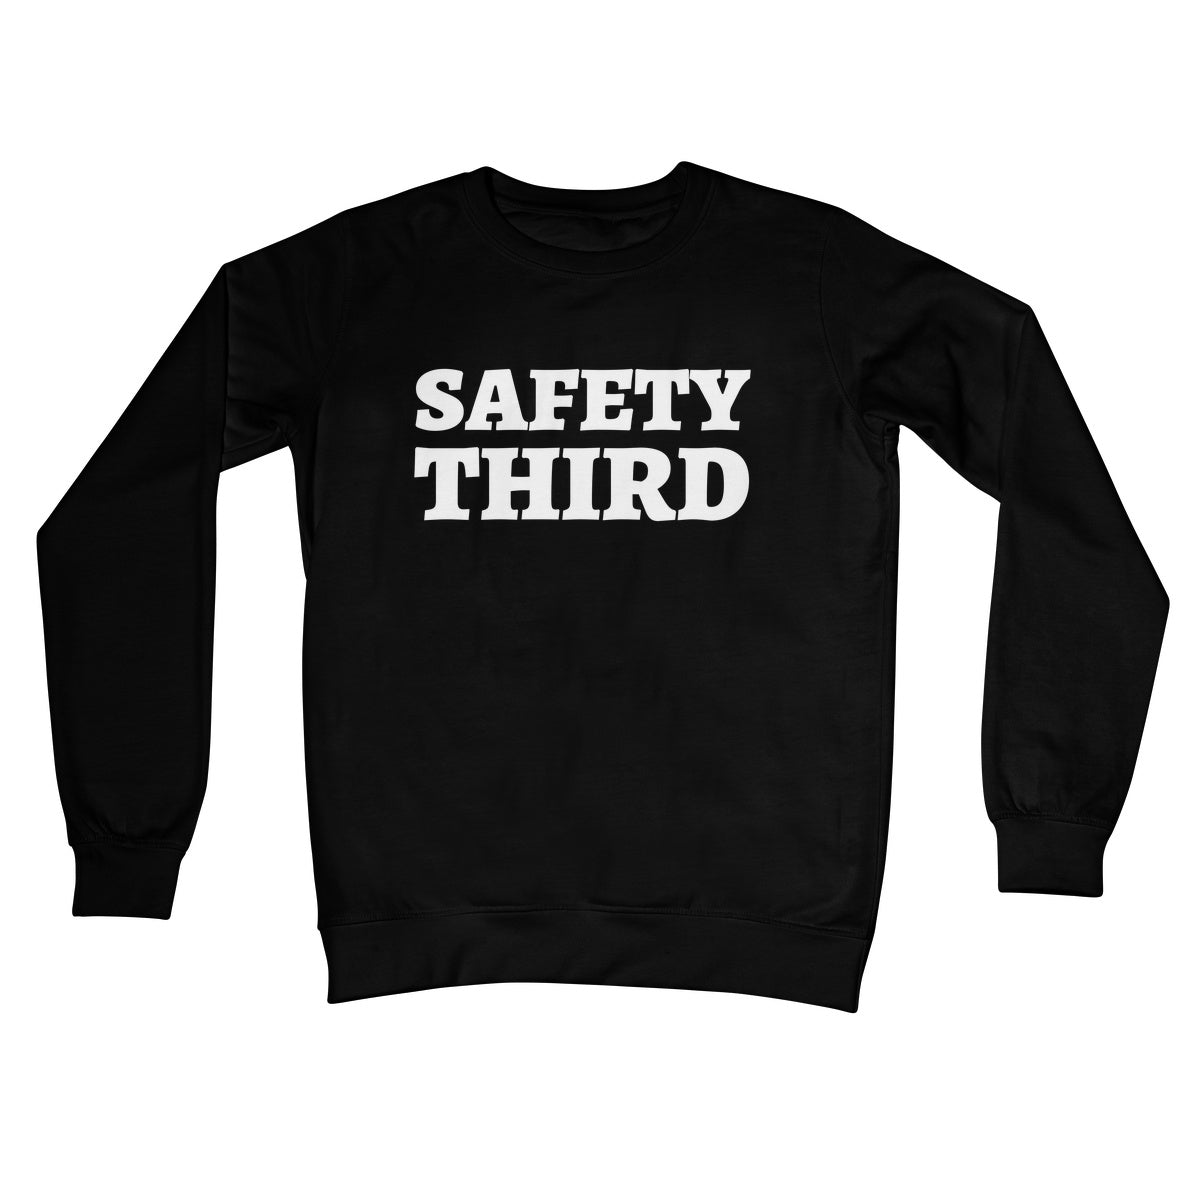 safety third jumper black